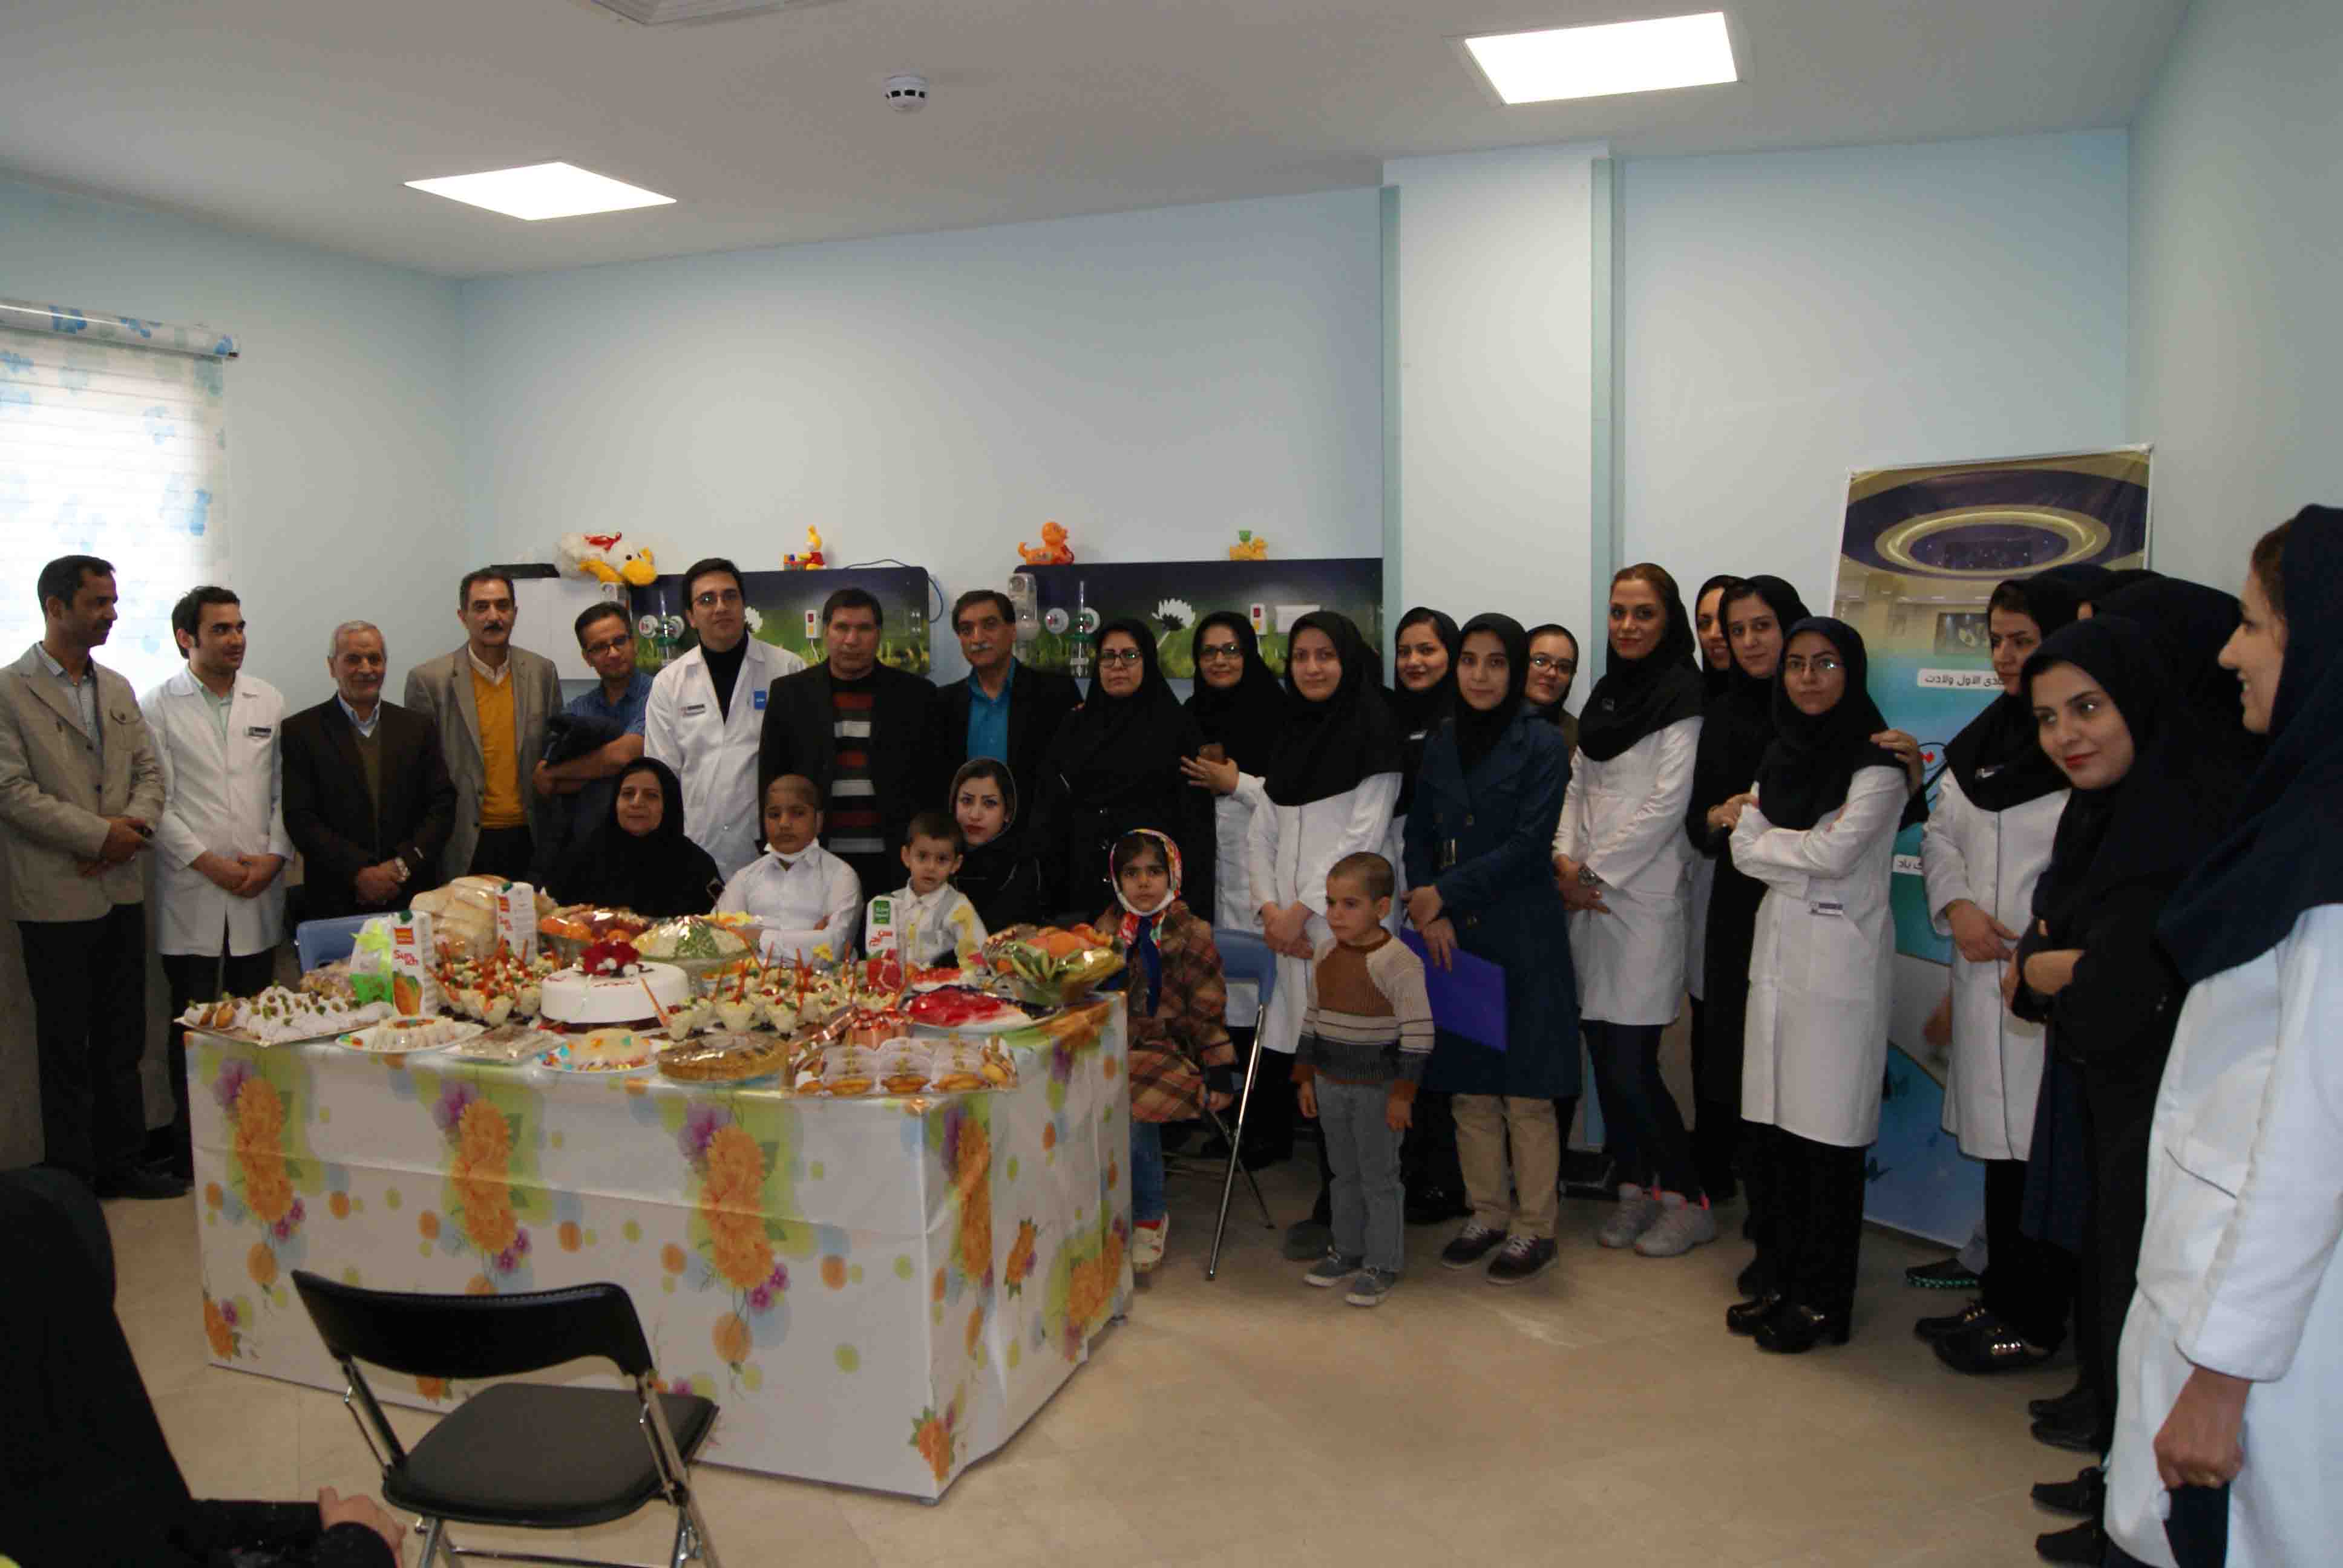 تقدیر از پرستاران گرانقدر بیمارستان ایران مهر بمناسبت روز پرستار